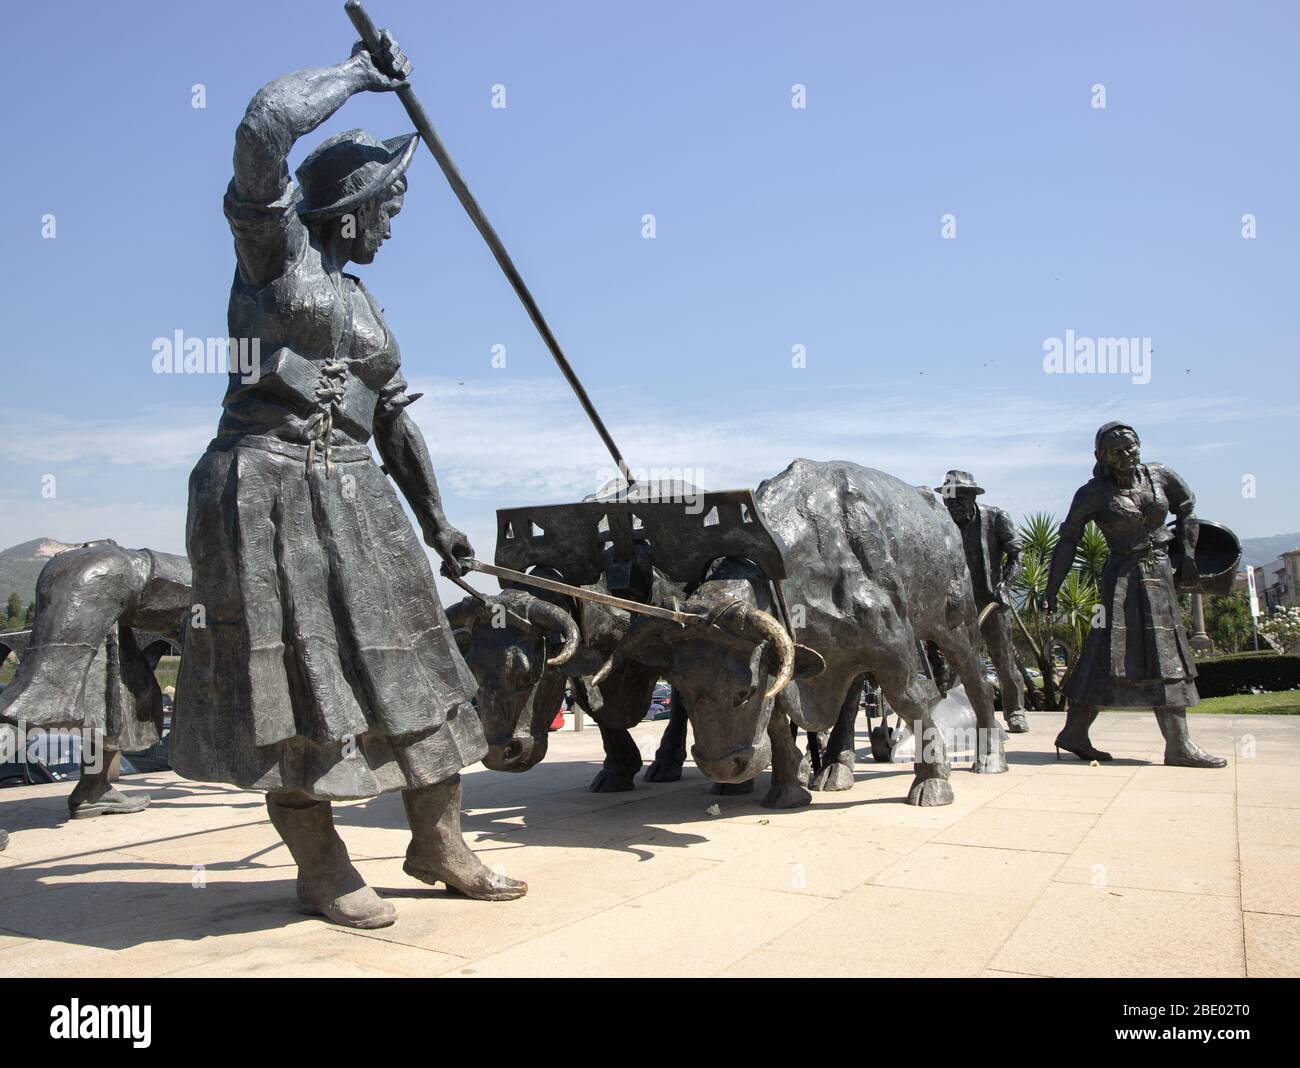 Monument pour honorer ceux qui travaillent comme agriculteurs avec des sculptures labourant, semant et récoltant Ponte de Lima Nord du Portugal Banque D'Images